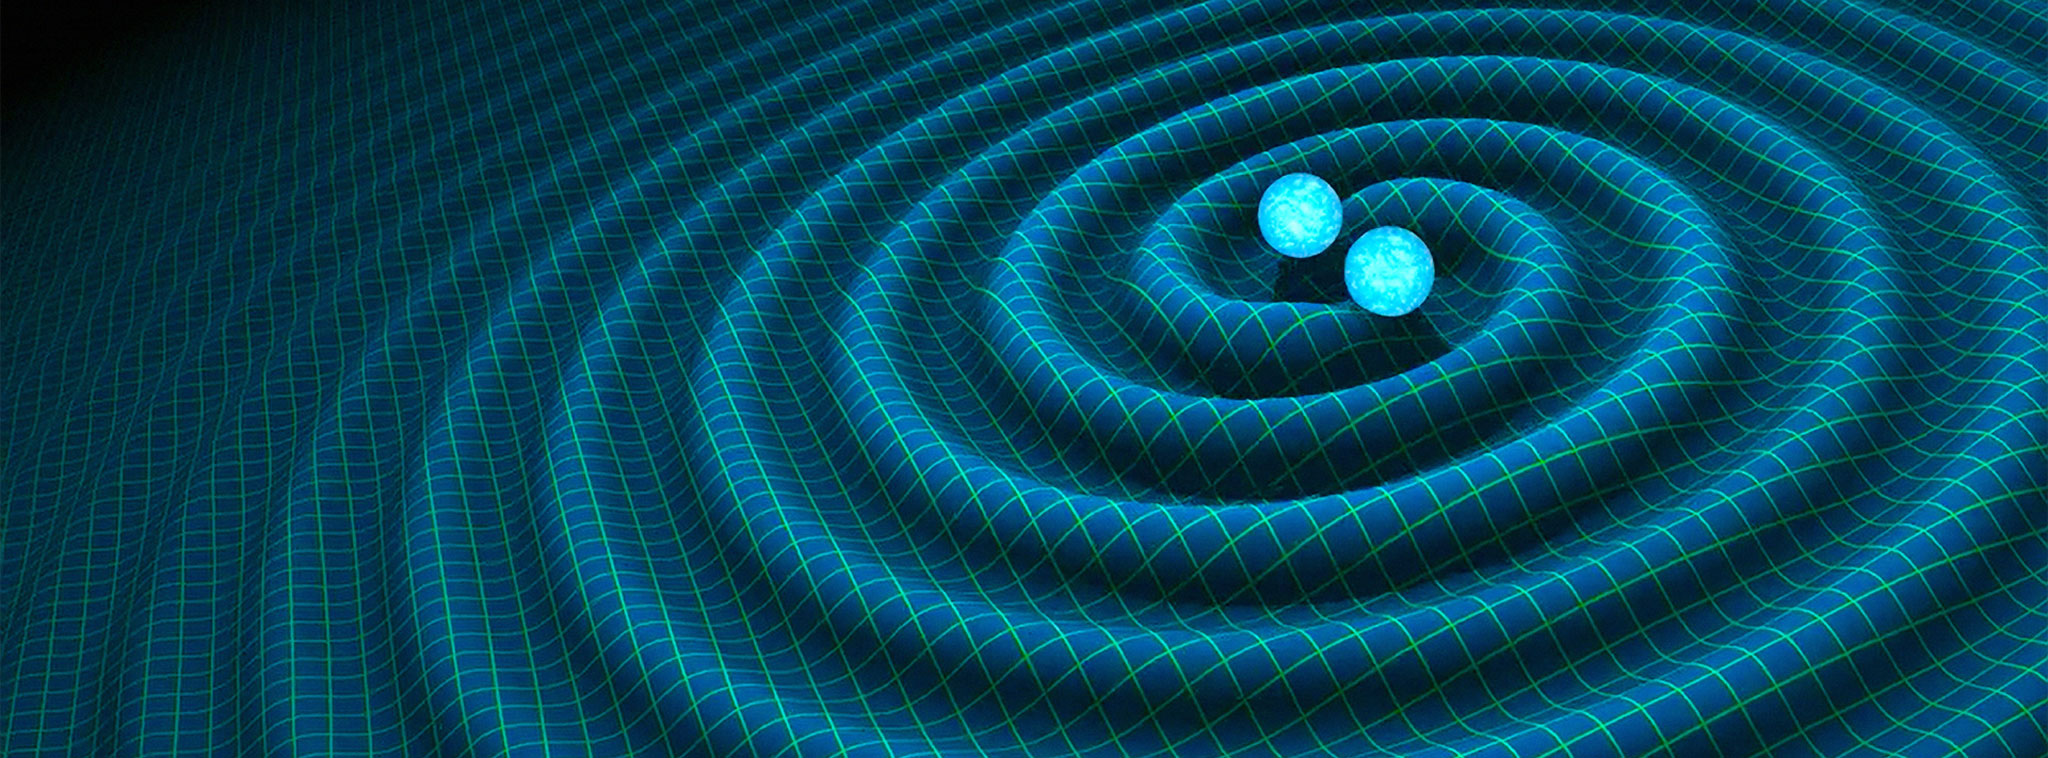 Nobel Vật lý 2017 được trao cho 3 nhà khoa học có công trong việc phát hiện ra sóng hấp dẫn